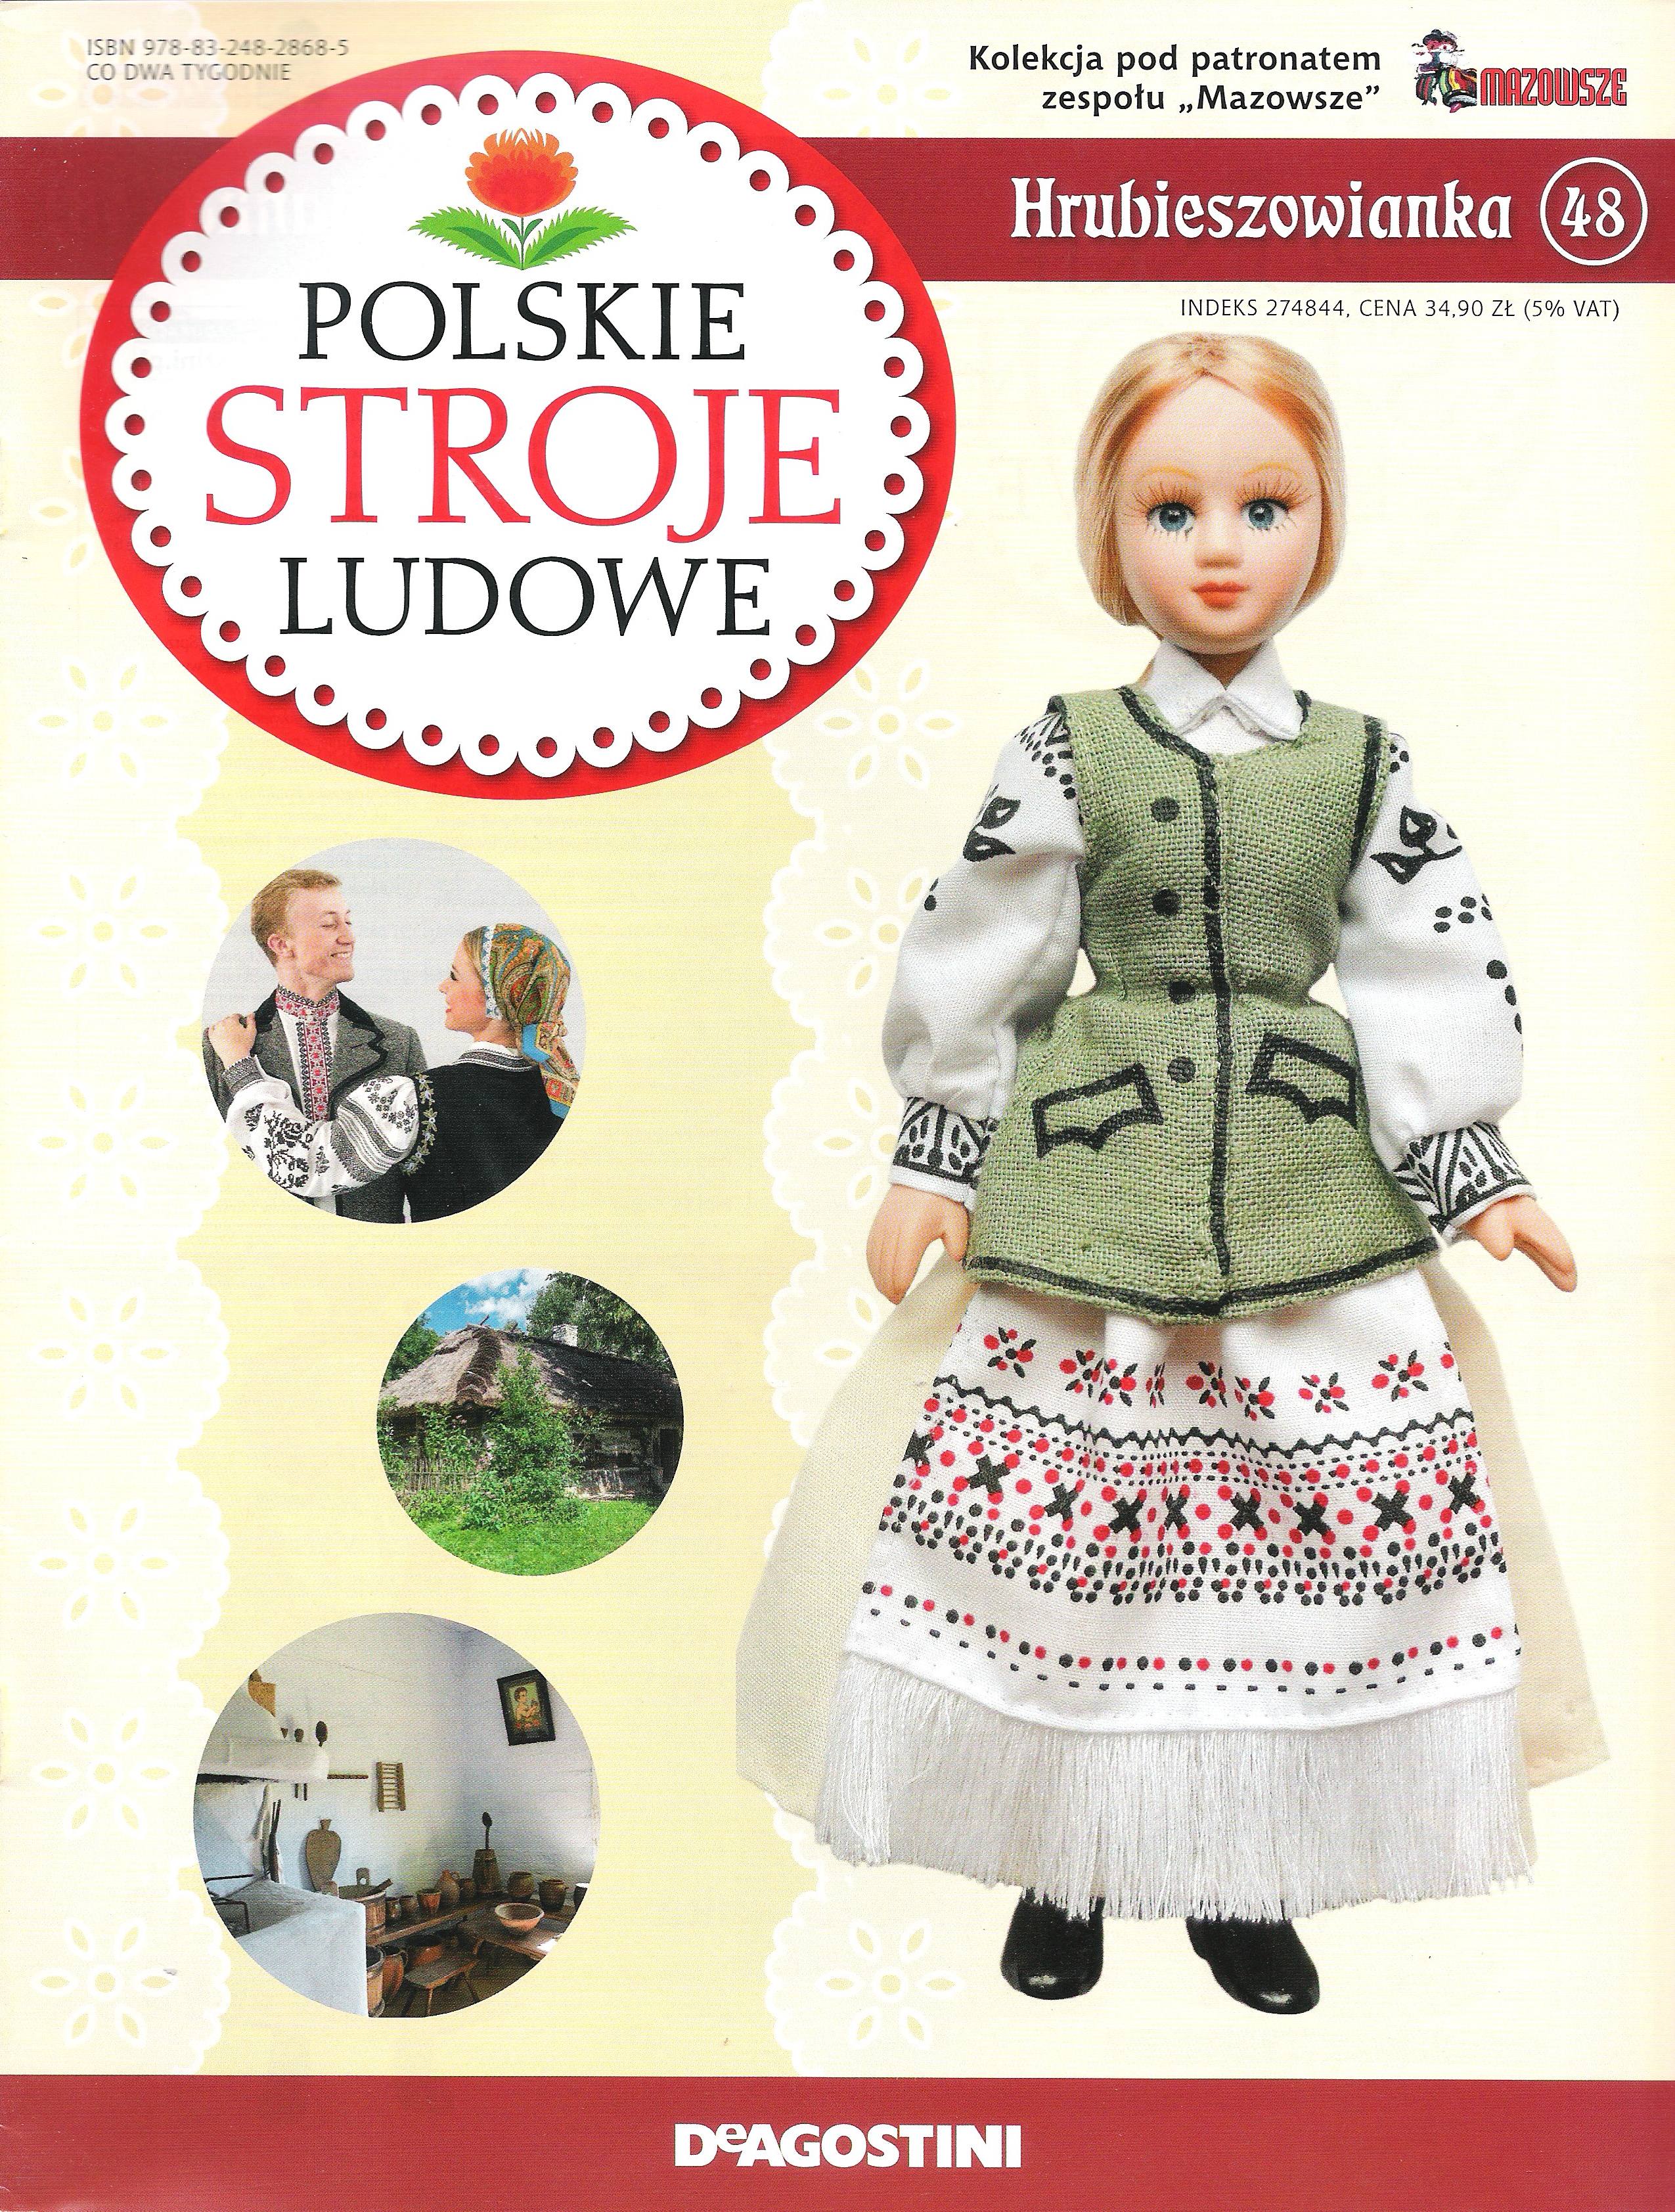 Polskie Stroje Ludowe №048 - Hrubieszowianka - 1